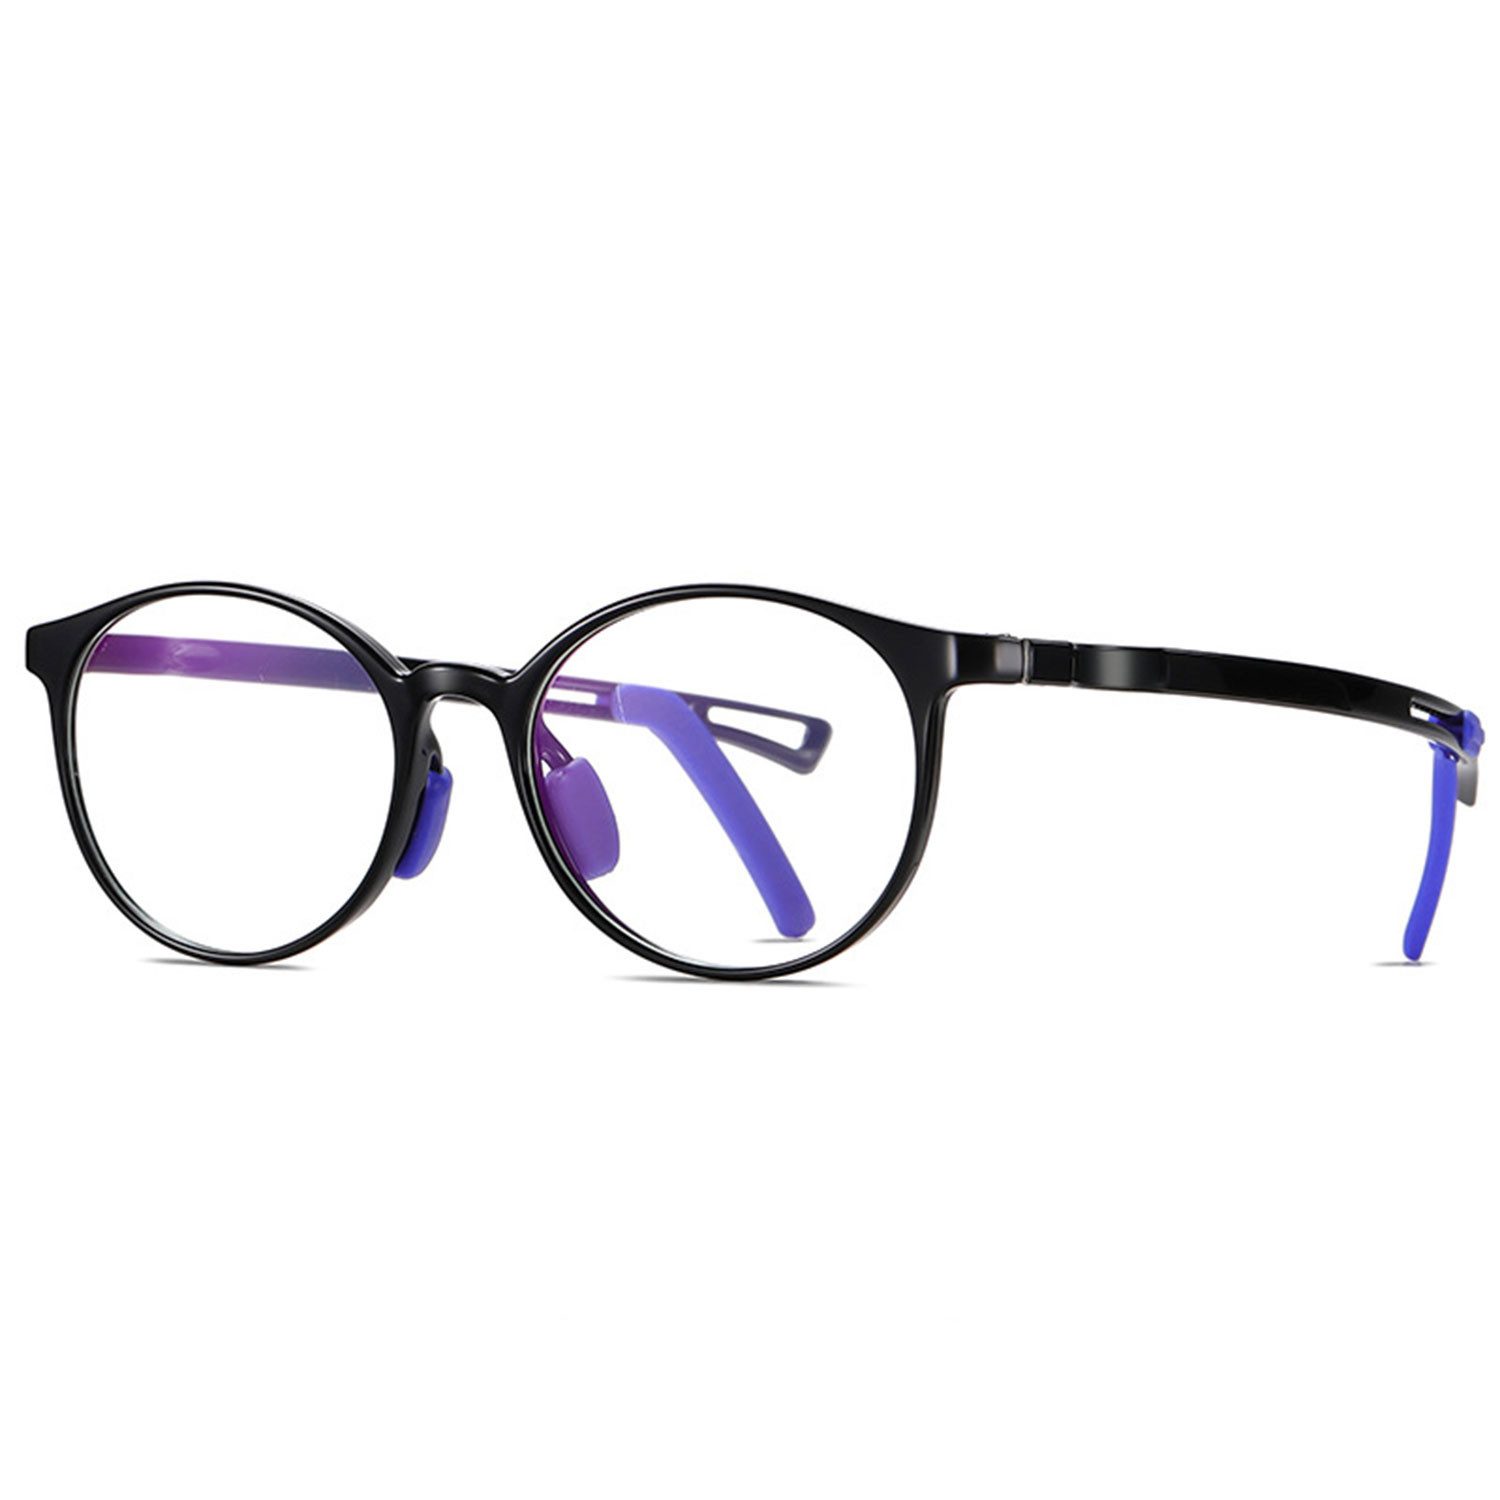 MAGICSHE Brille Anti-Blaulichtbrille für Kinder, Anti-Ermüdung Gaming Brille